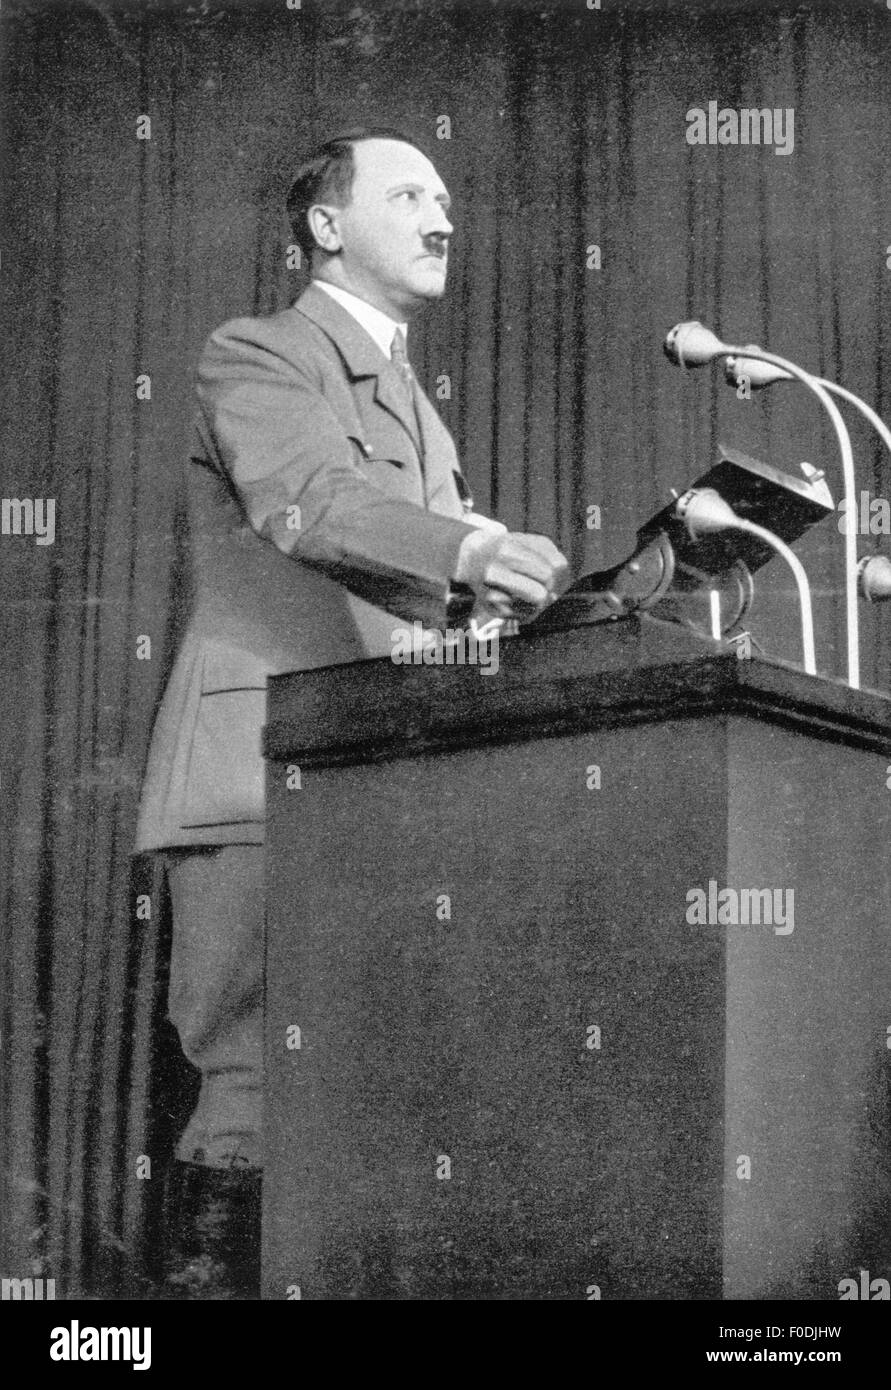 Hitler, Adolf, 20.4.1889 - 30.4.1945, politicien allemand (NSDAP), Chancelier du Reich 30.1.1933 - 30.4.1945, discours lors de la campagne électorale, mars 1936, Banque D'Images